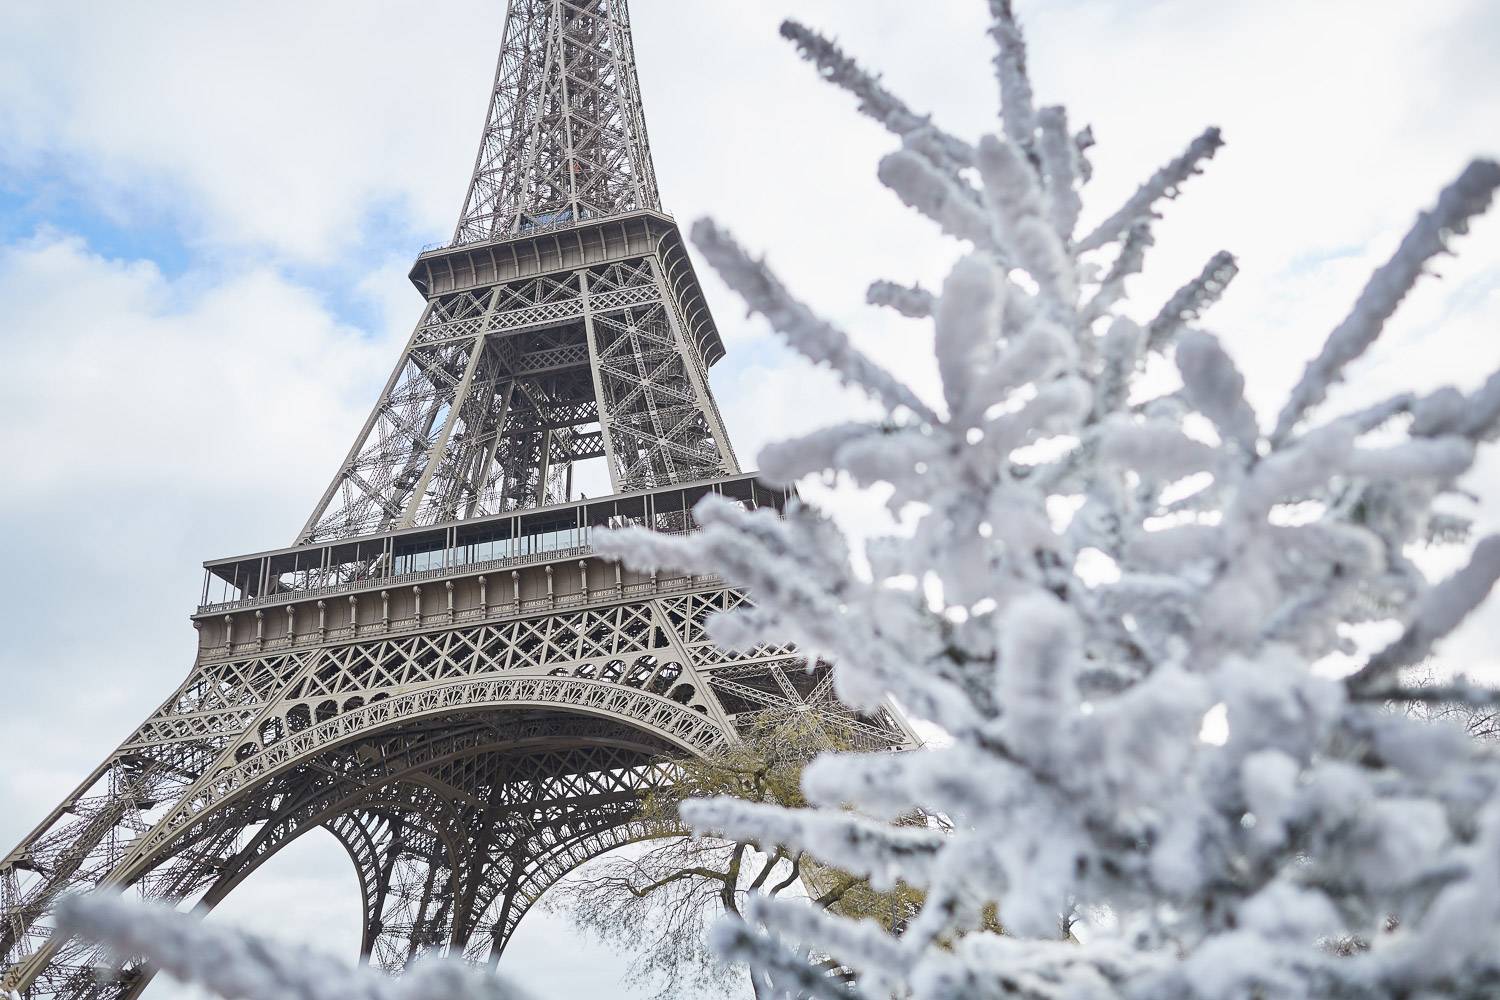 chrLa lista di cose da fare assolutamente a Parigi questo Natale
